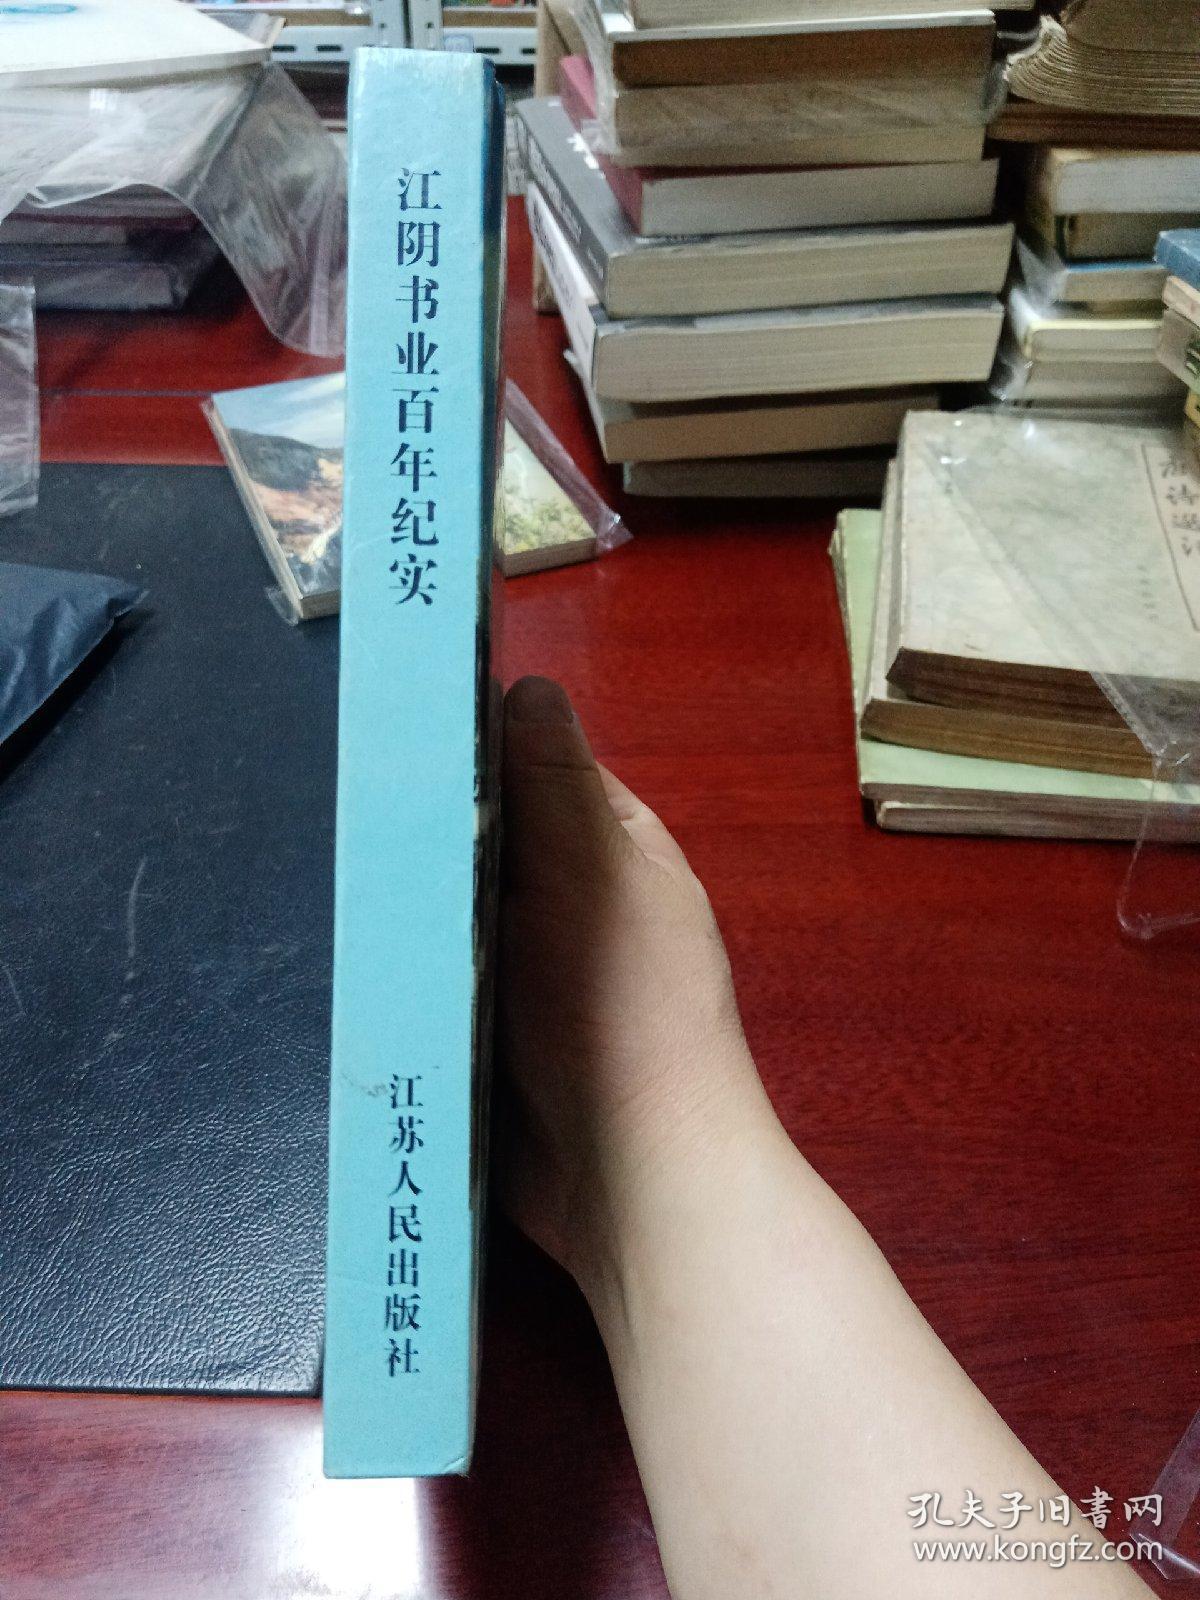 江阴书业百年纪实:1864~2004